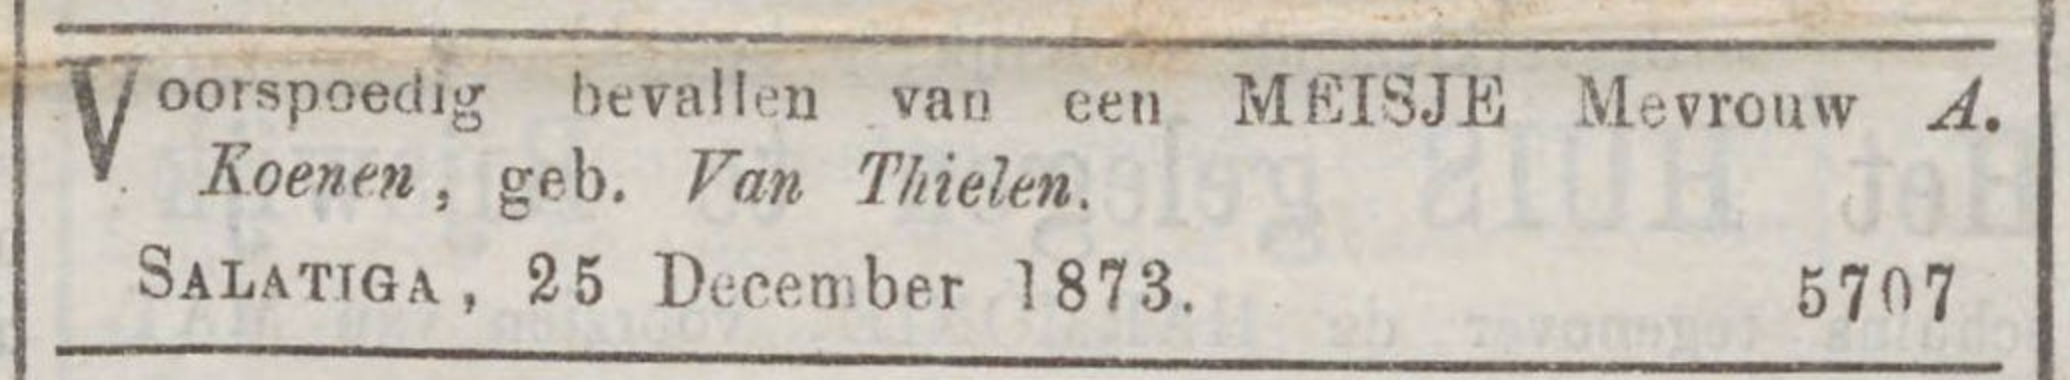 Tilly Koenen geboorteadv 1873